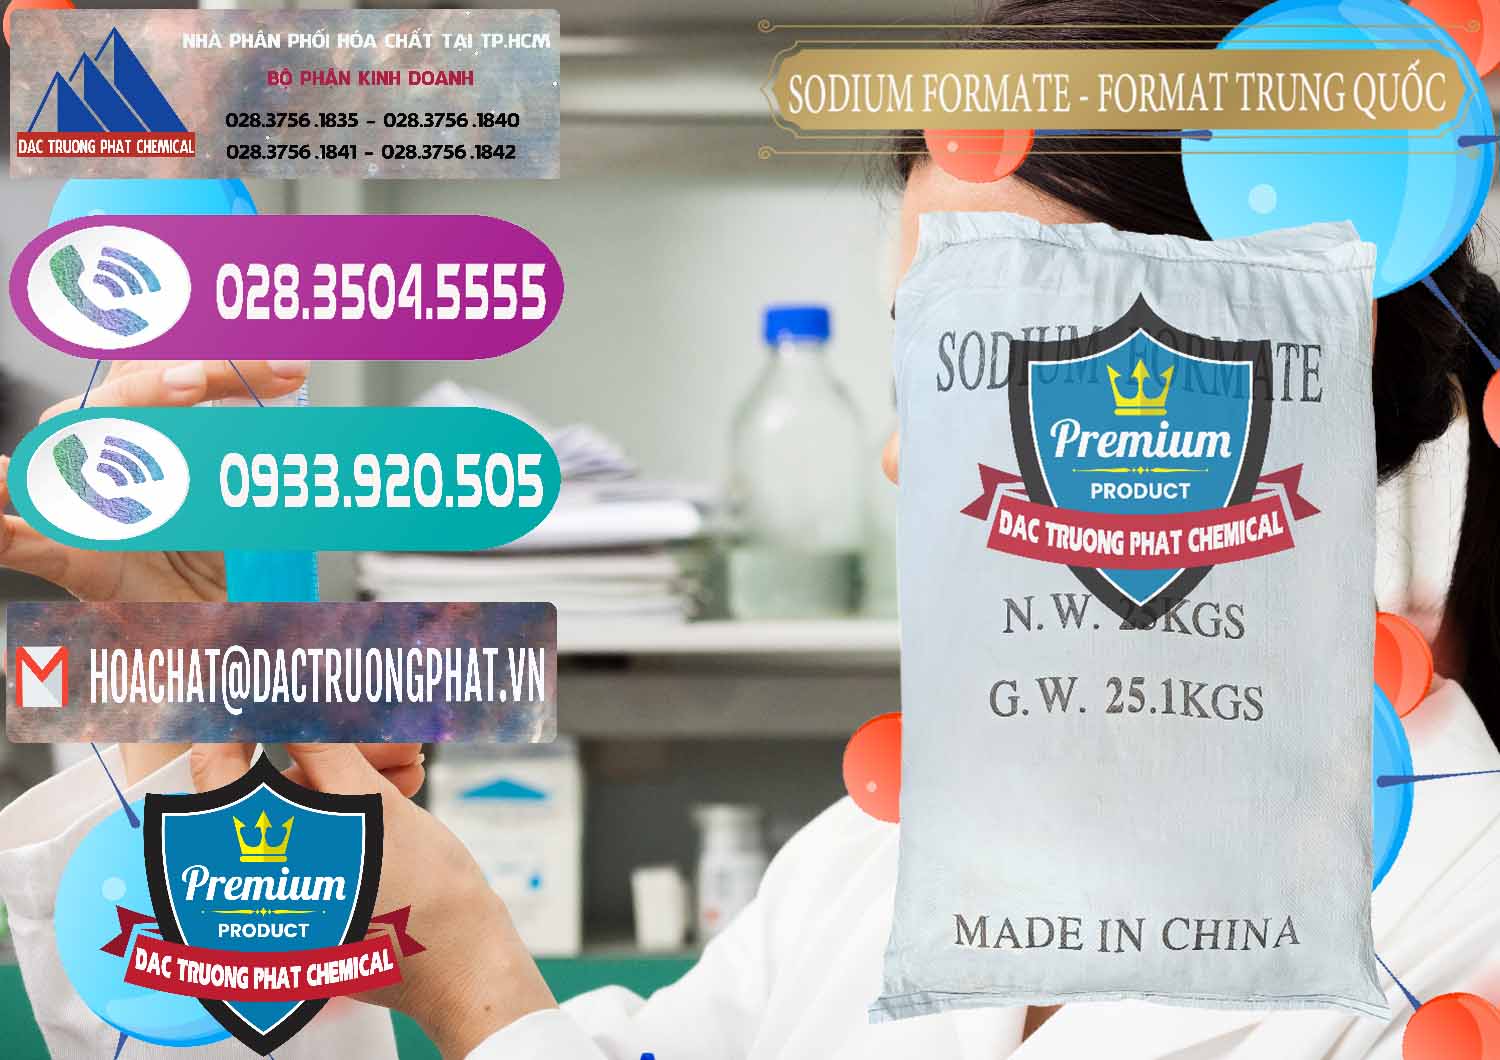 Đơn vị cung cấp & bán Sodium Formate - Natri Format Trung Quốc China - 0142 - Công ty phân phối & bán hóa chất tại TP.HCM - hoachatxulynuoc.com